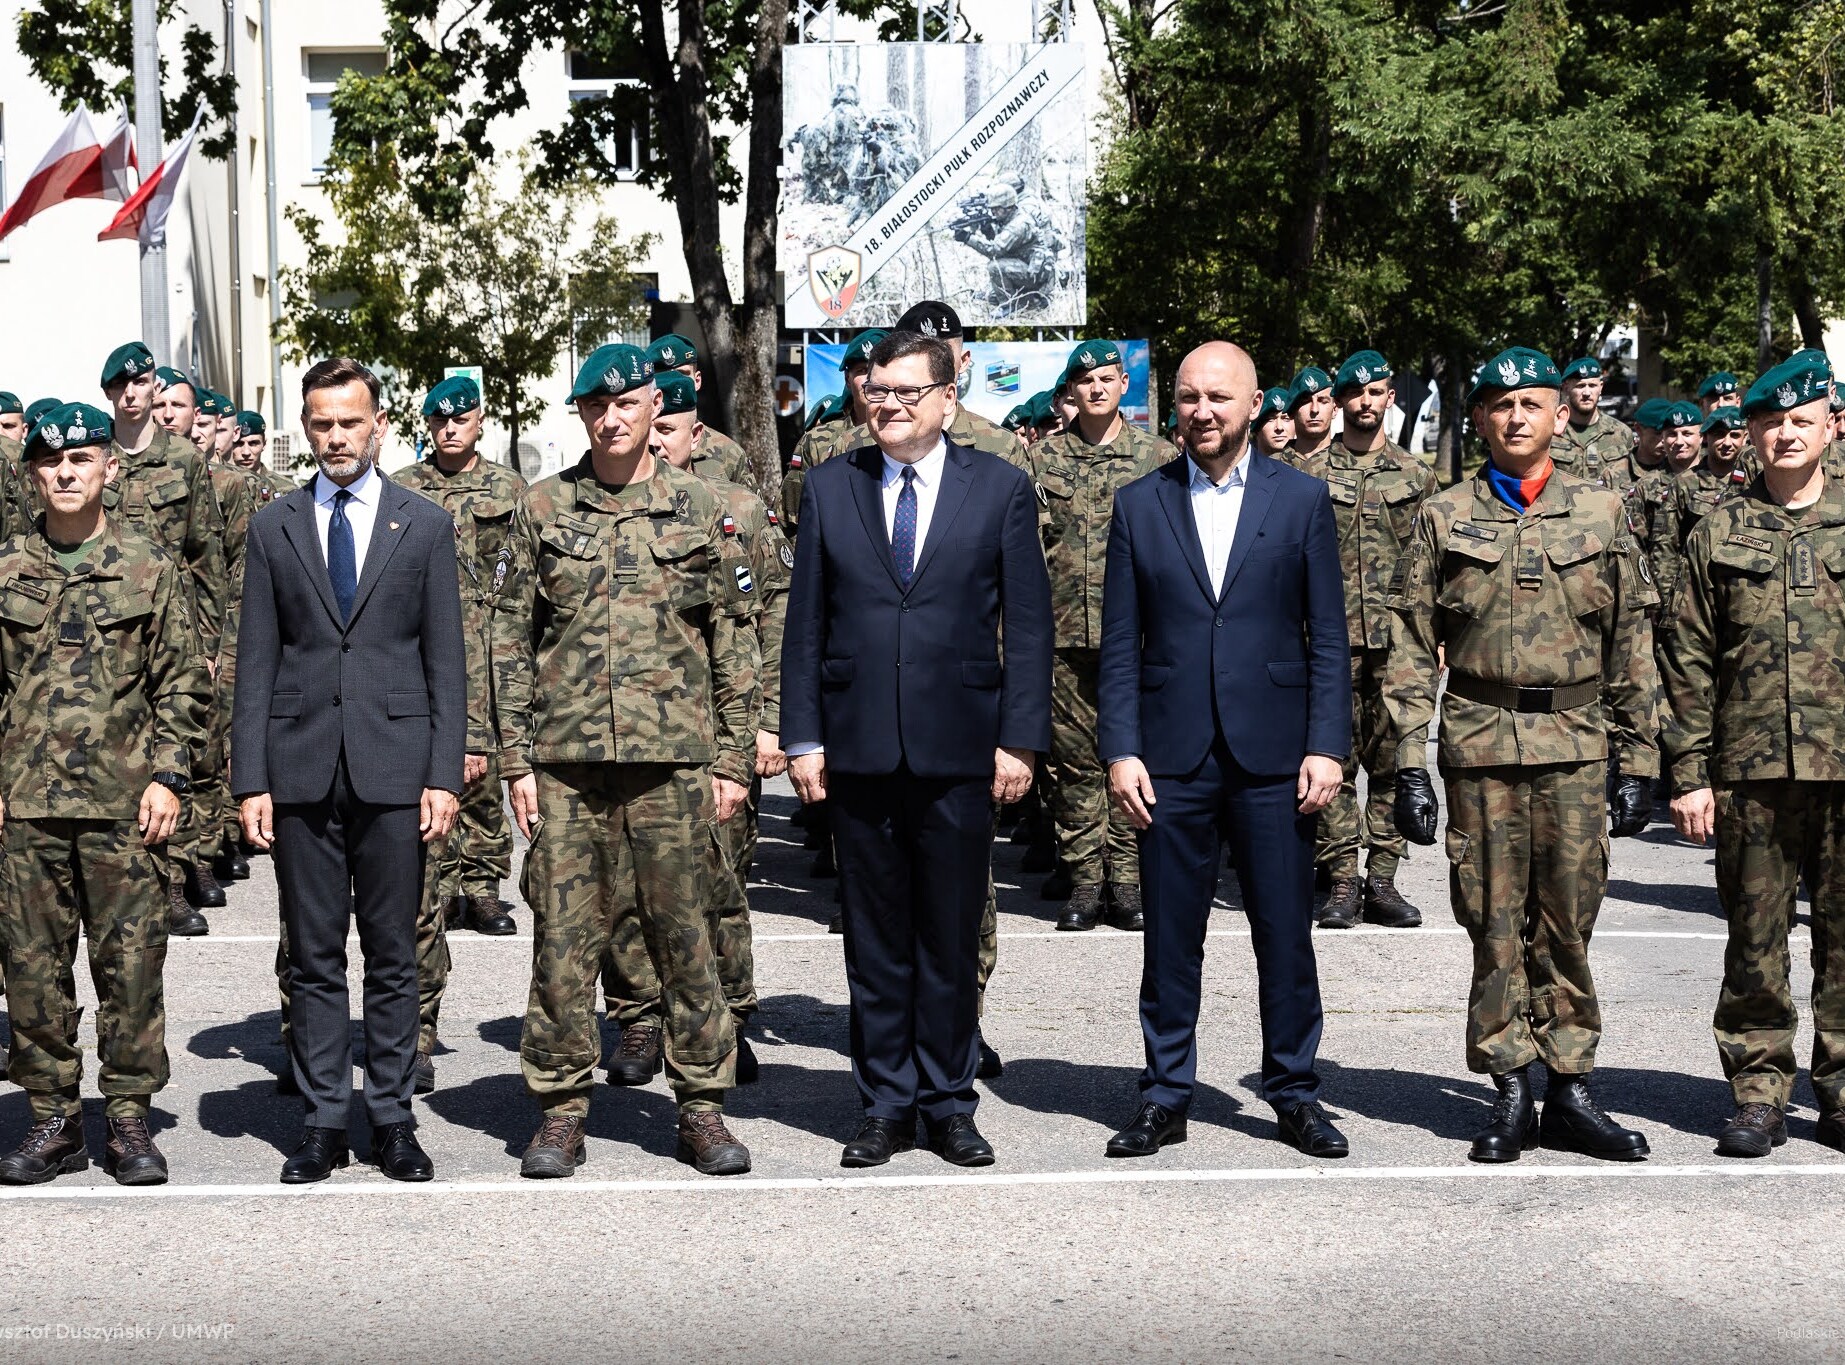 Oficjele stoją na zdjęciu z grupą żołnierzy